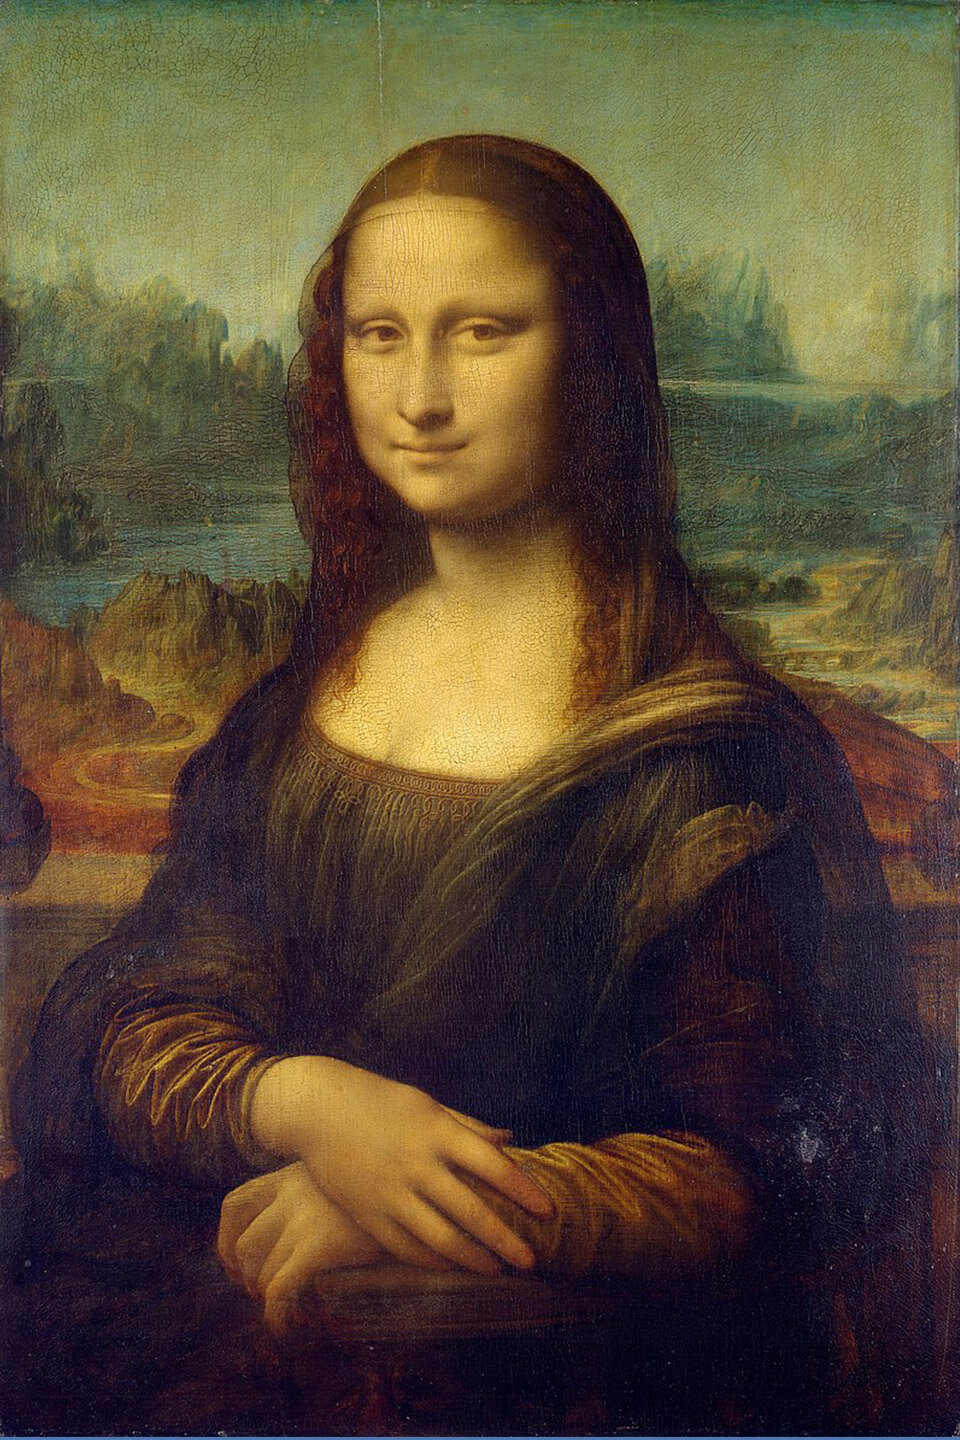 המונה ליזה. ציורו של לאונרדו דה וינצ'י